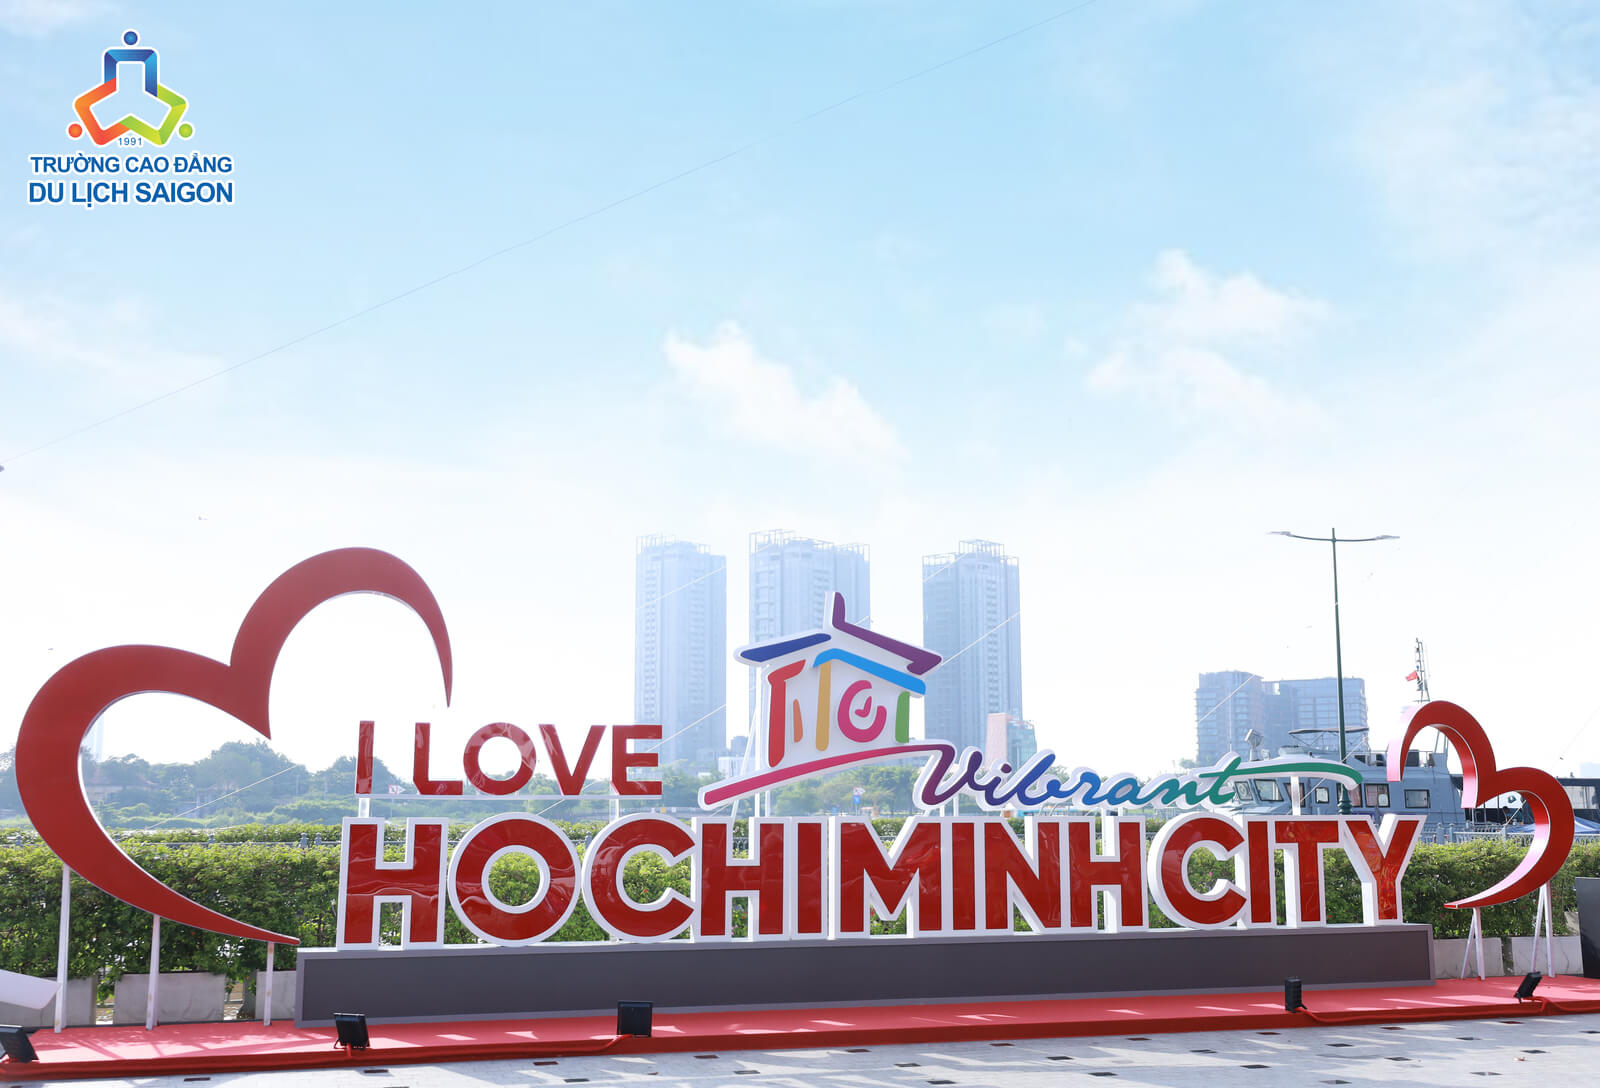 I love Hochiminh City